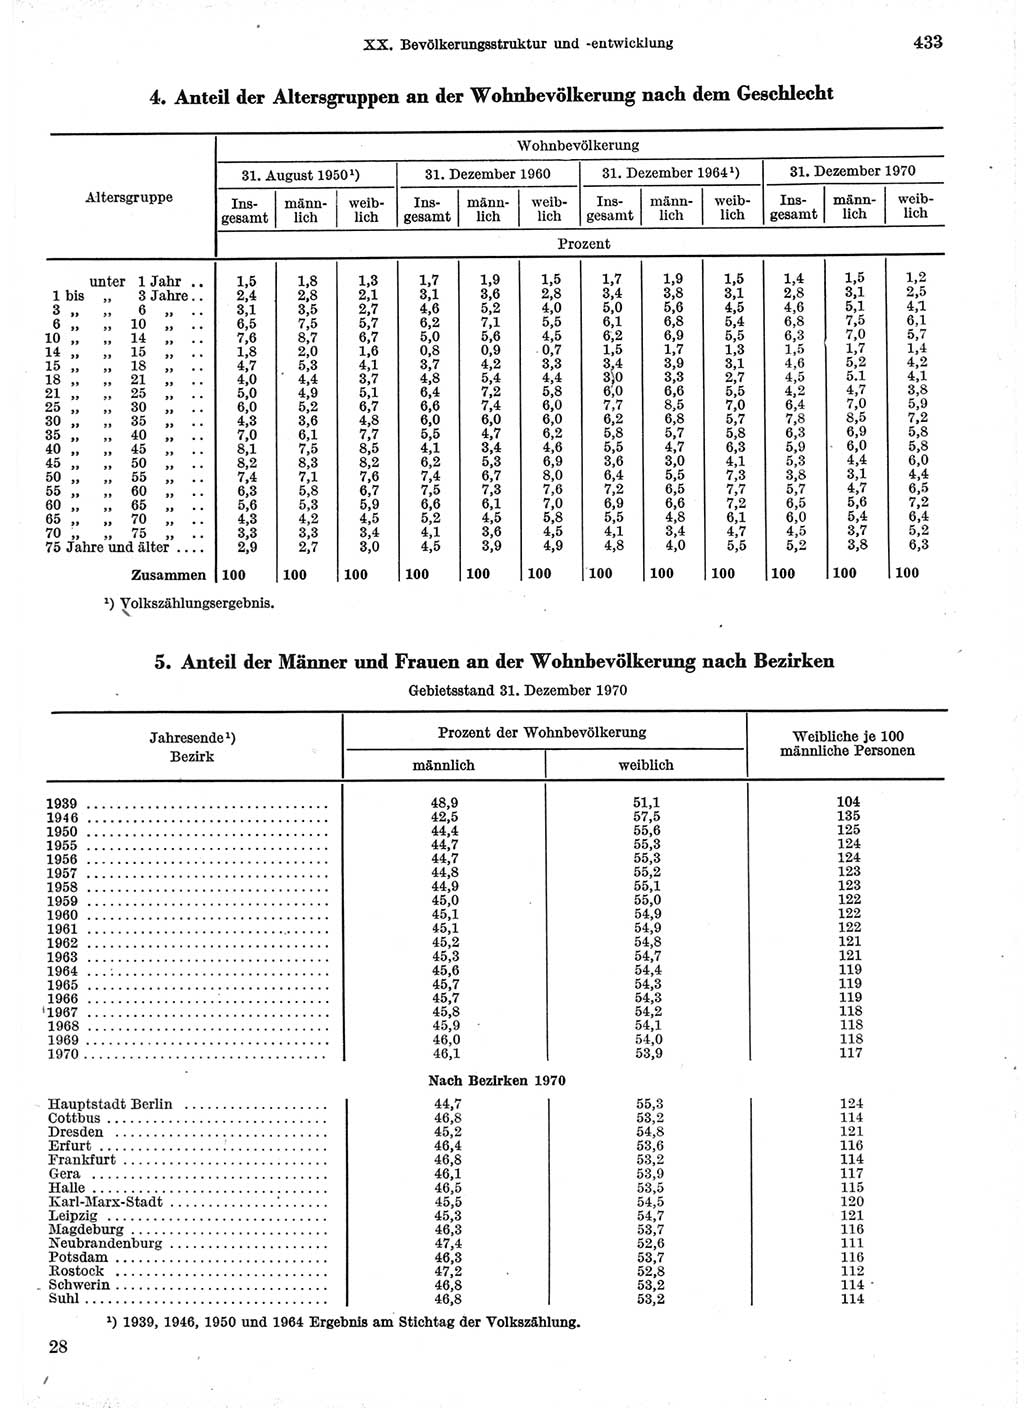 Statistisches Jahrbuch der Deutschen Demokratischen Republik (DDR) 1971, Seite 433 (Stat. Jb. DDR 1971, S. 433)